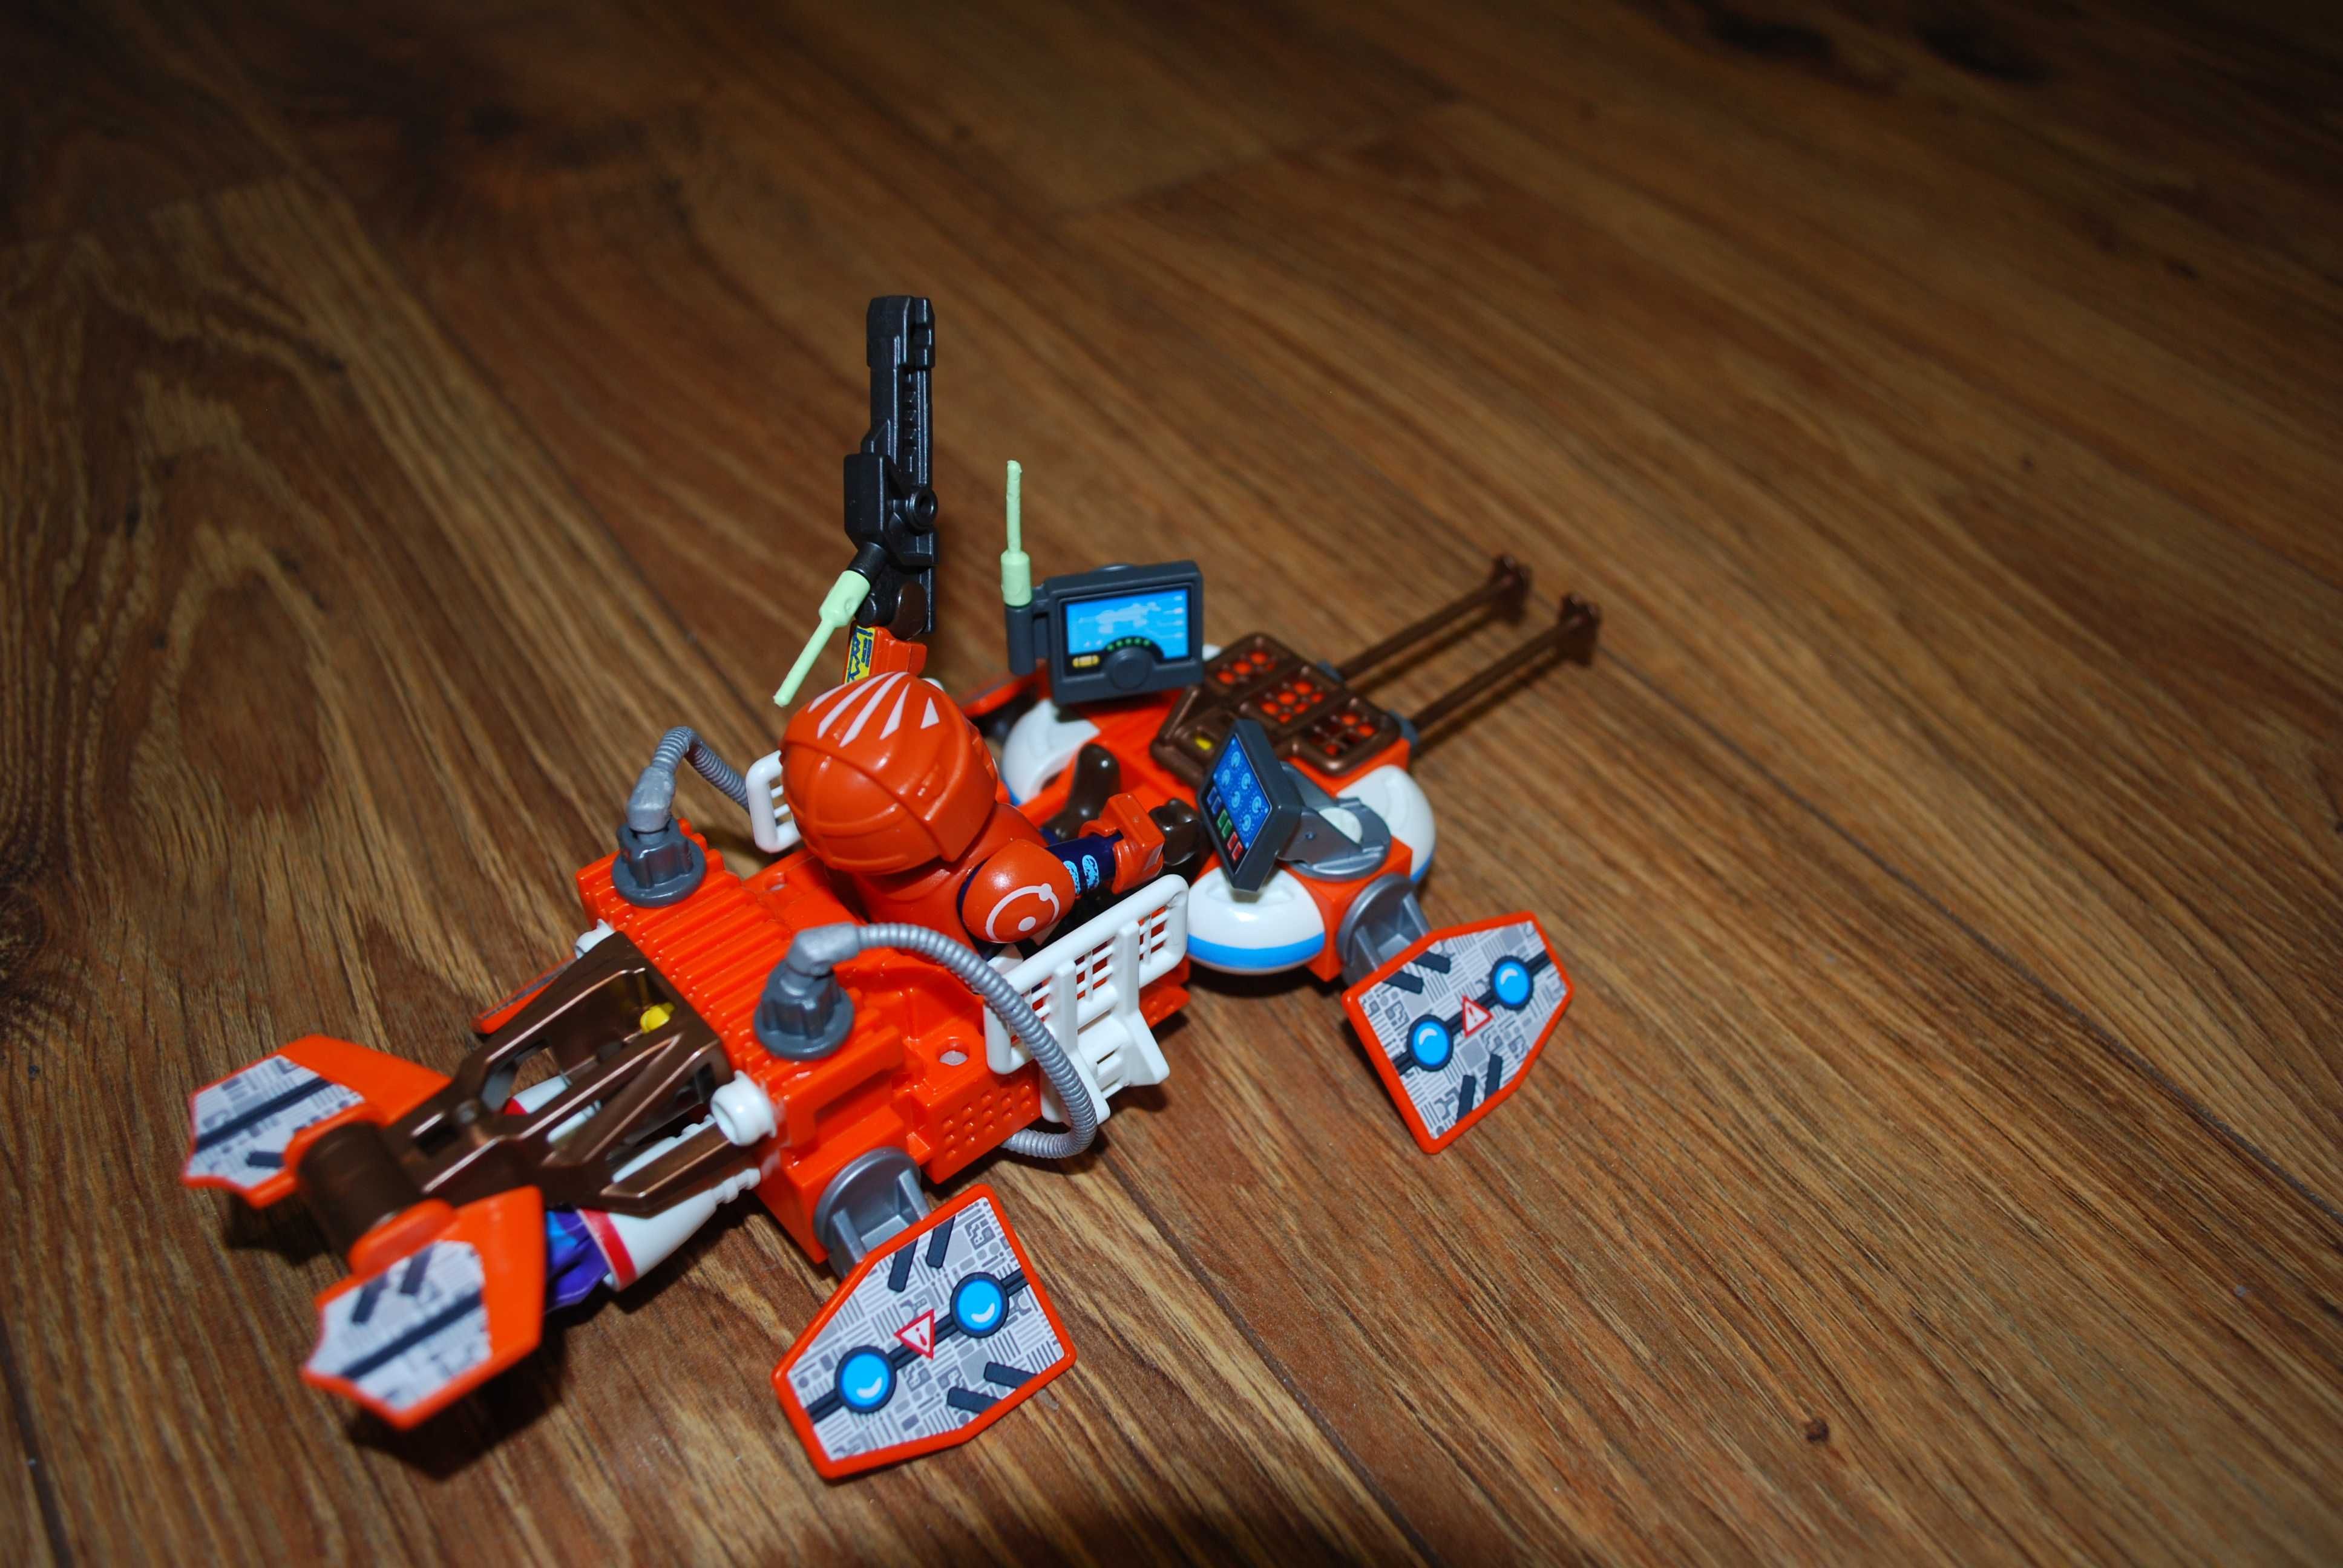 Playmobil  Space kosmos - zestaw upominkowy